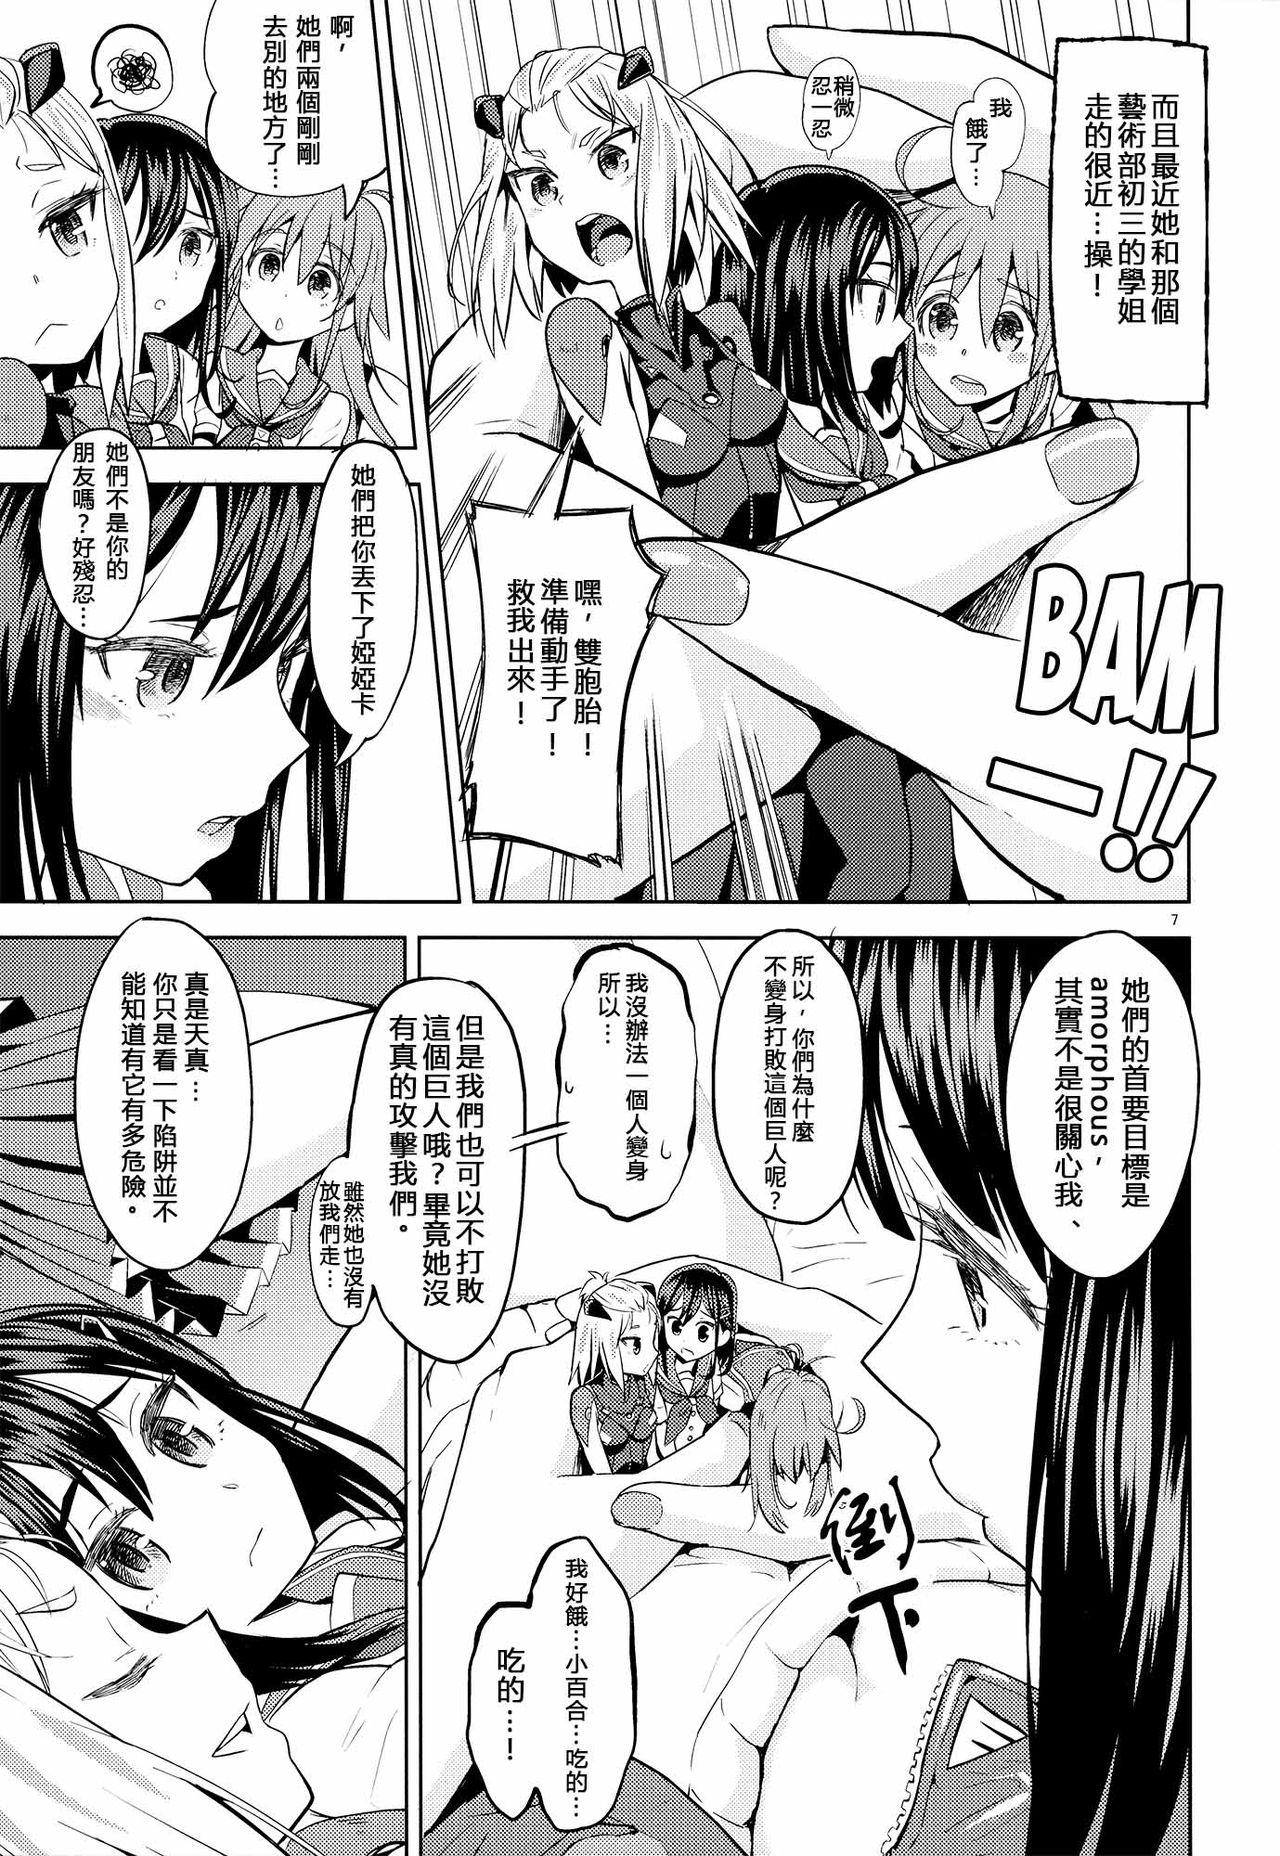 Family Roleplay Sore dakara Watashi wa Henshin Dekinai - Flip flappers Licking - Page 8